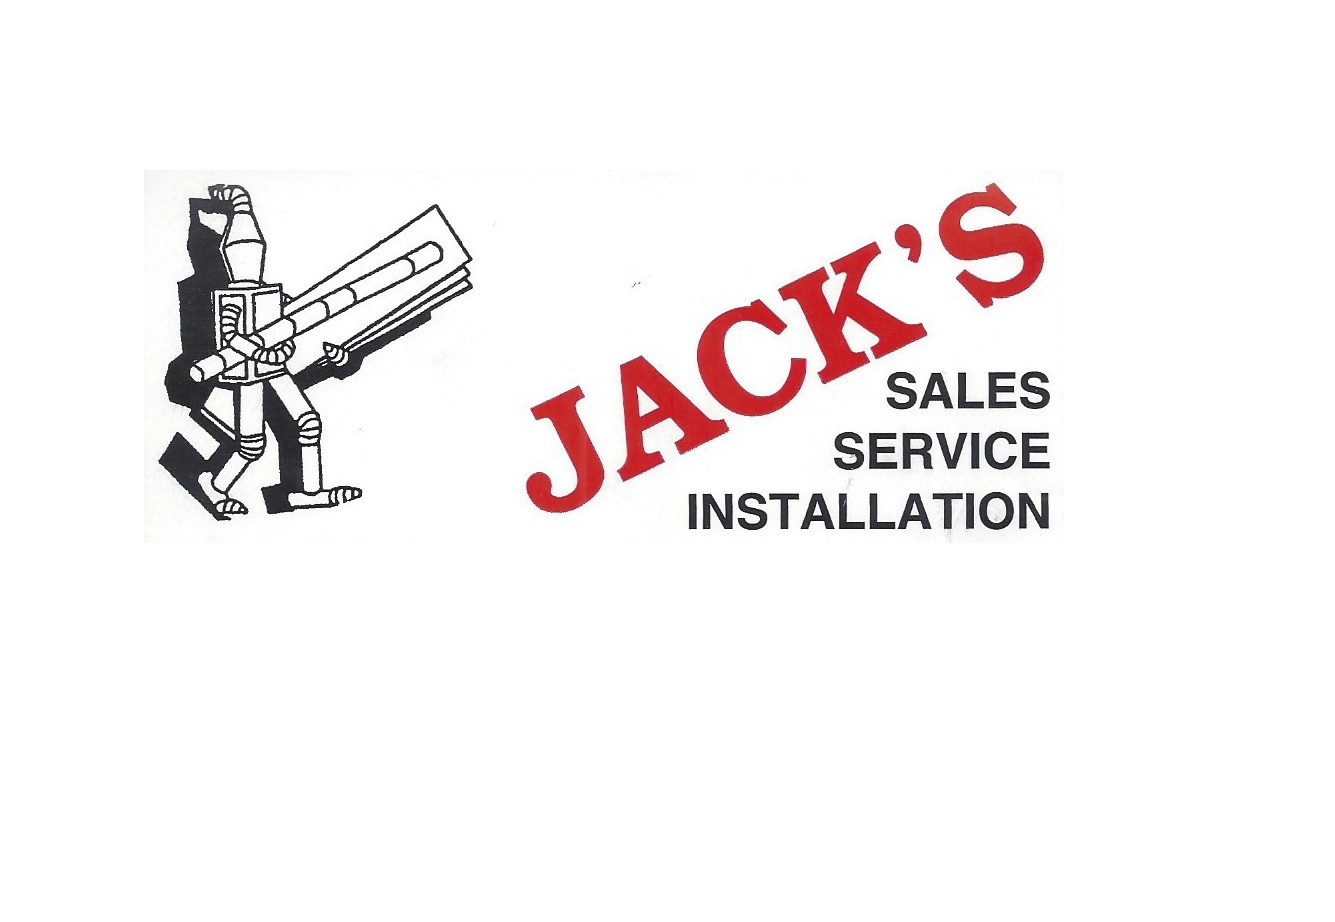 Jack's Heating & Cooling 1820 W Caro Rd, Caro Michigan 48723